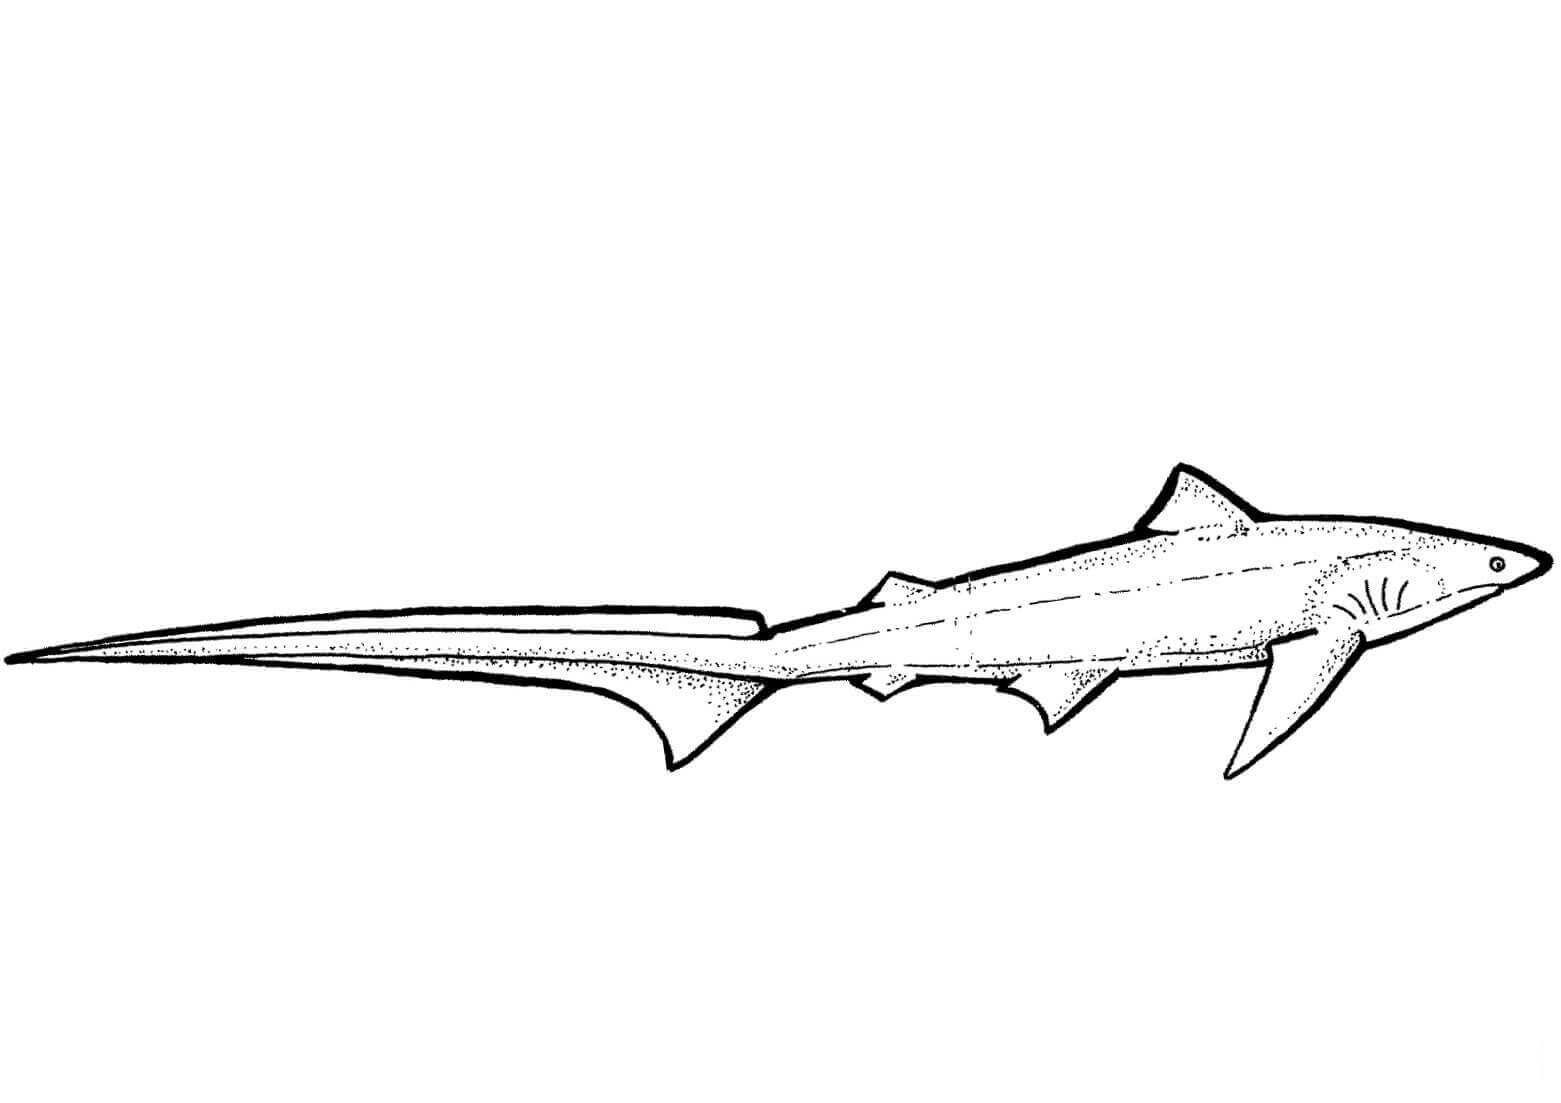 يمتلك القرش الدراس ذيولًا طويلة للغاية من سمك القرش